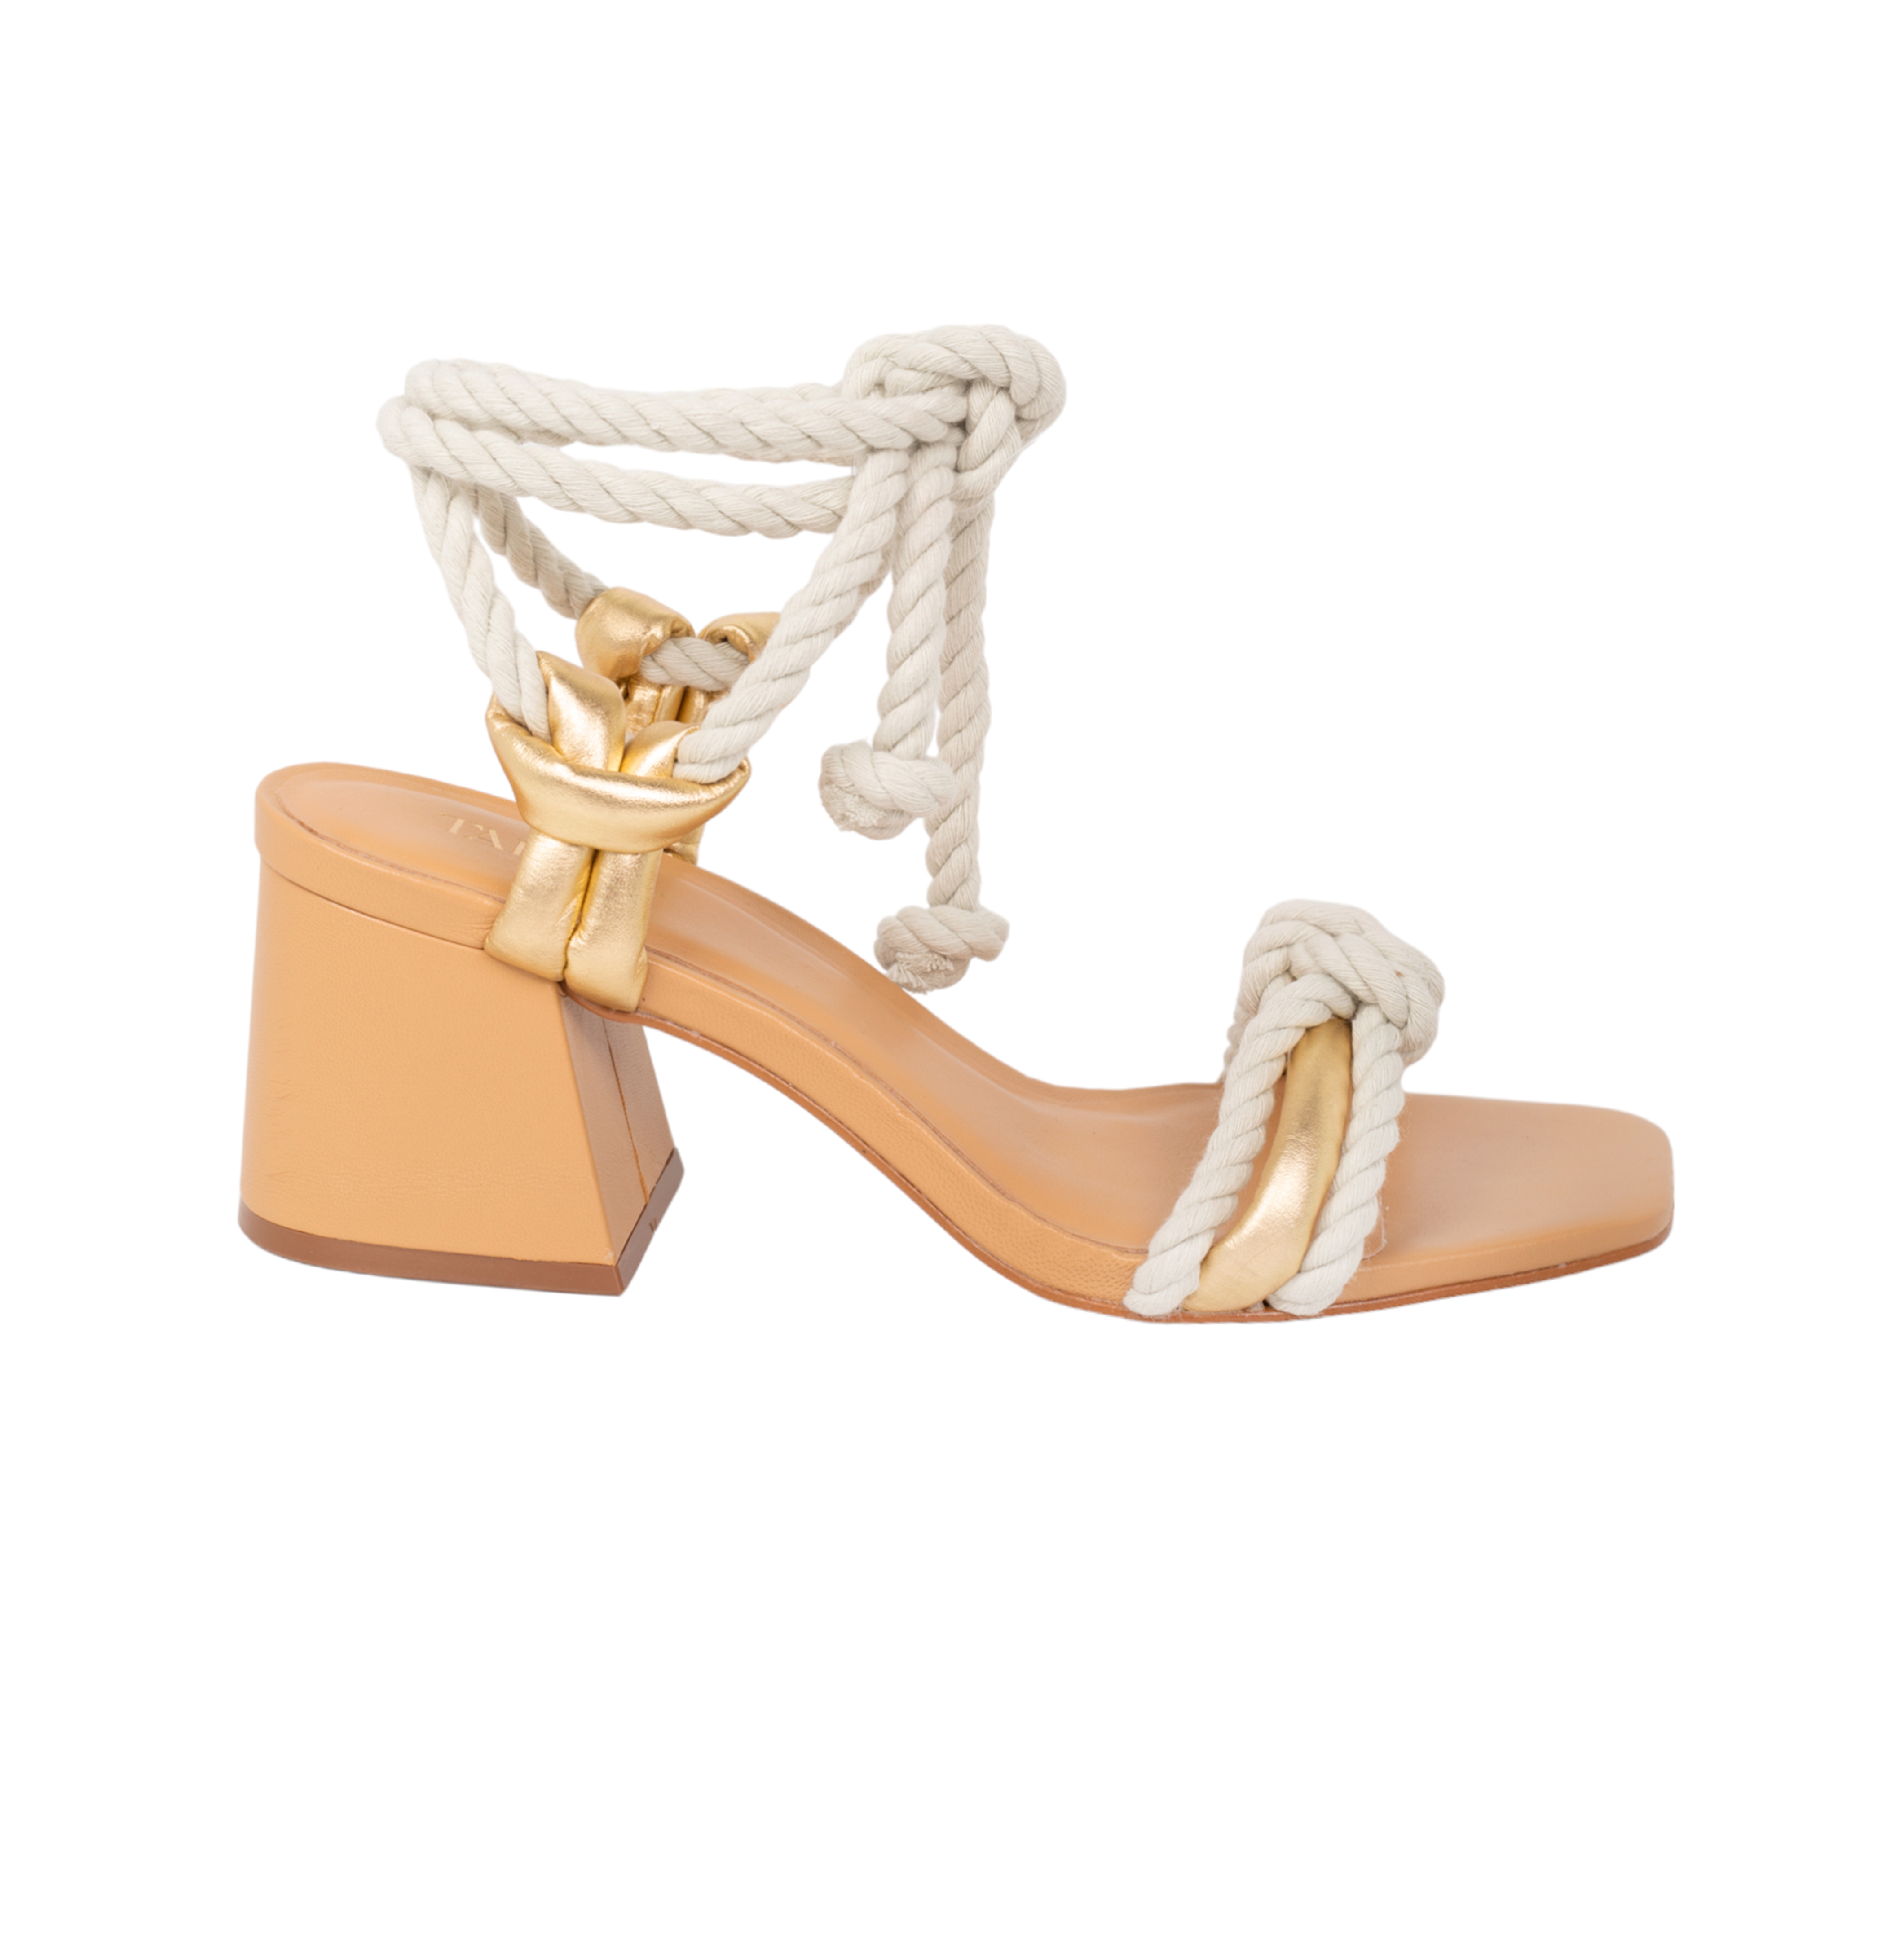 Arenisca Heels Sandals - Gold Sandals TARBAY   